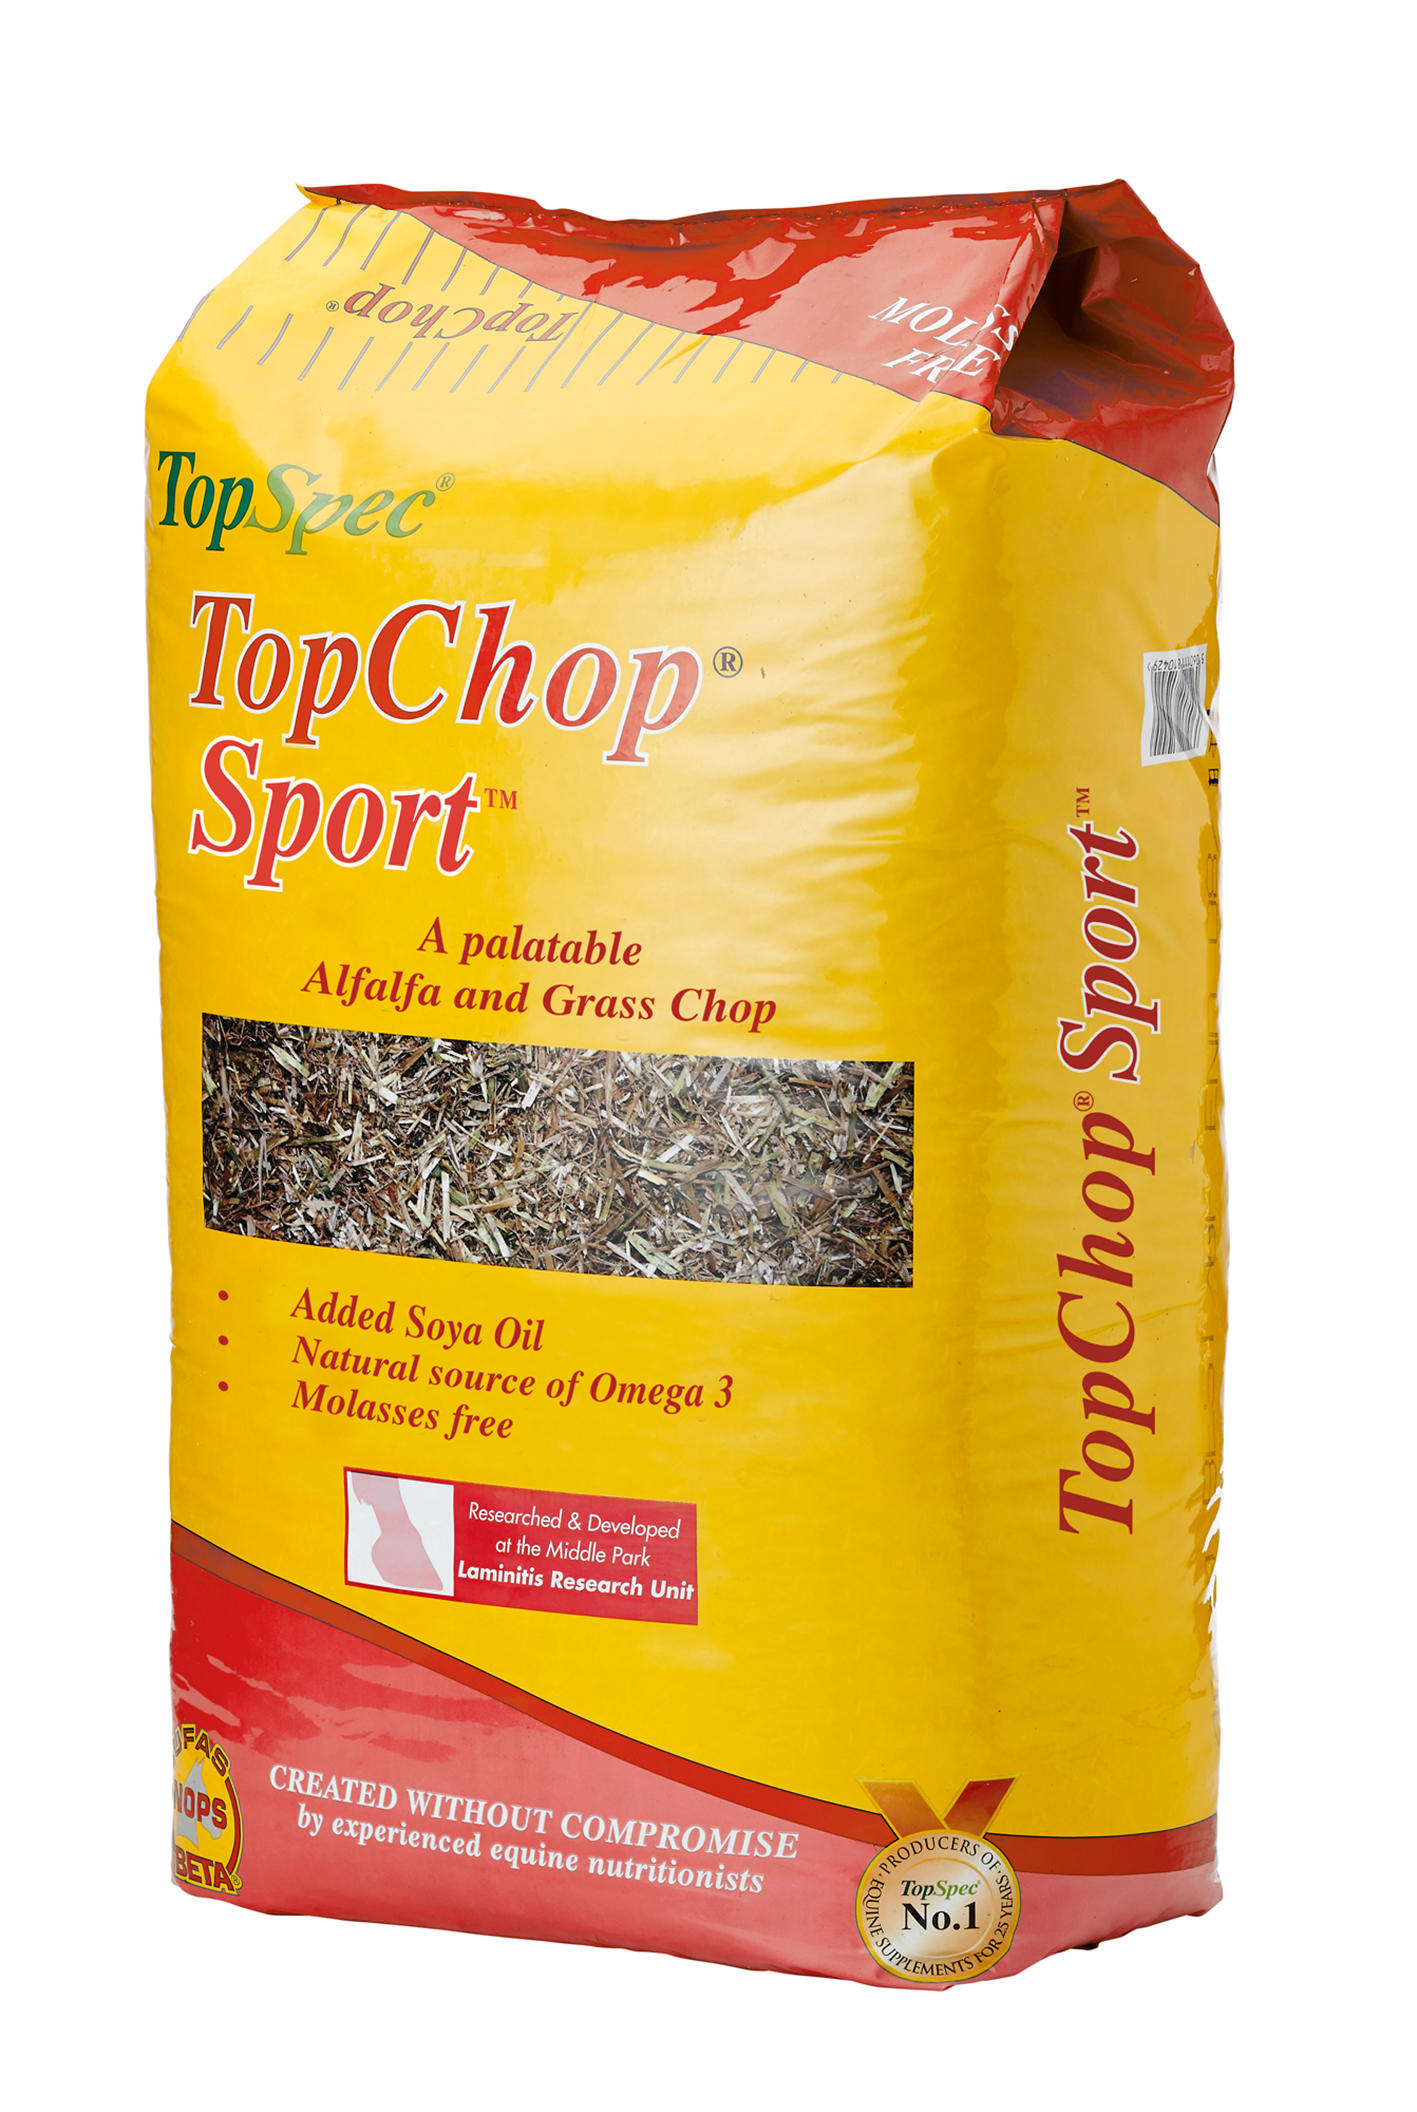 TopSpec TopChop Sport 15kg